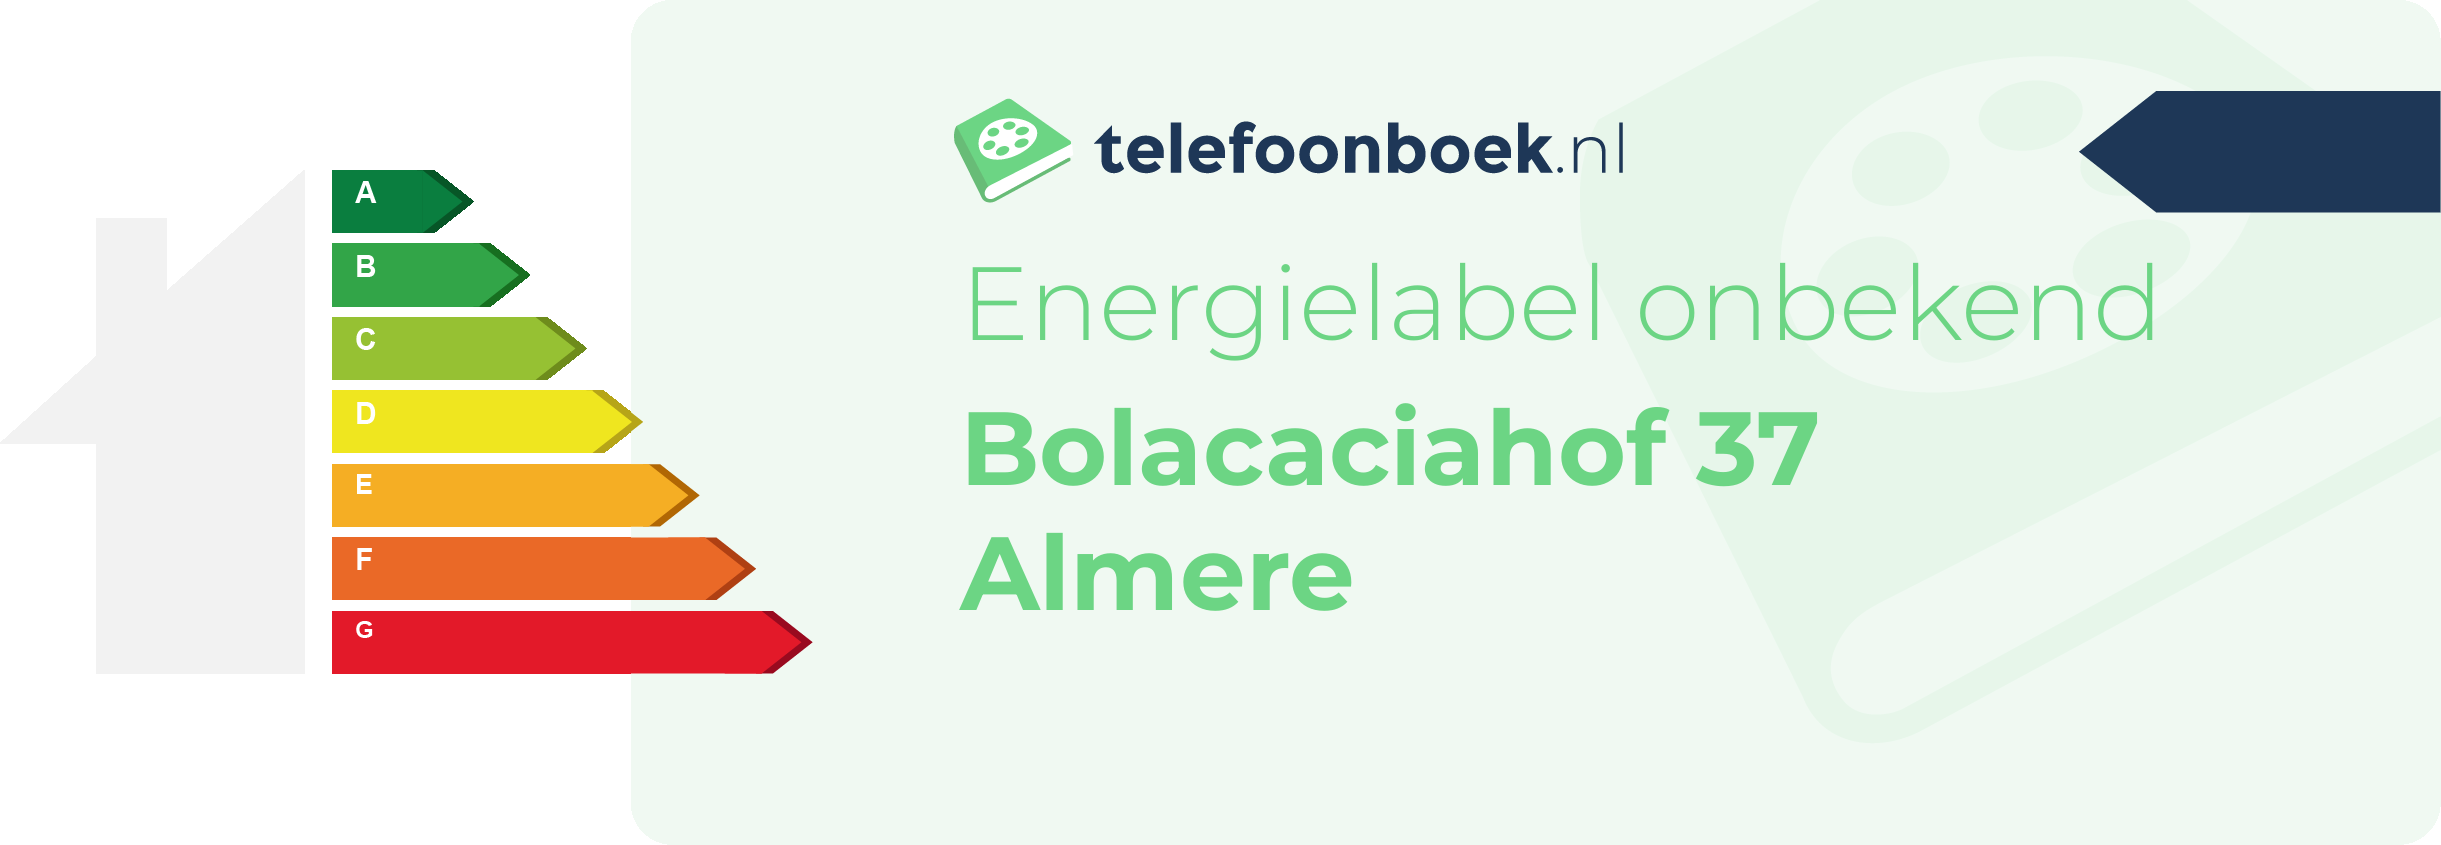 Energielabel Bolacaciahof 37 Almere